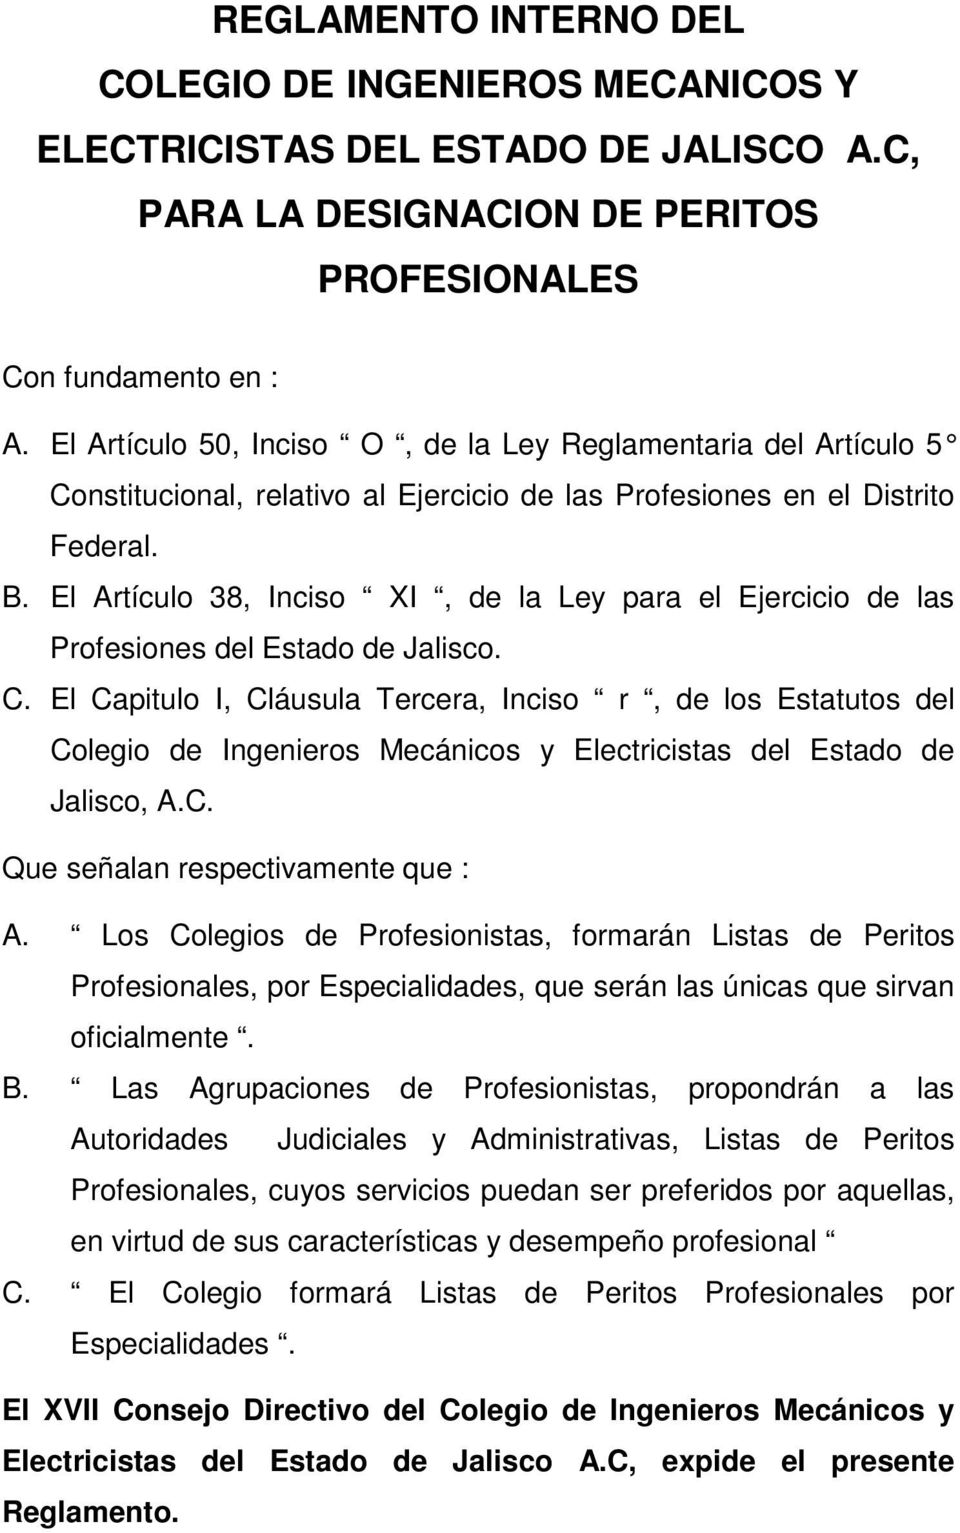 El Artículo 38, Inciso XI, de la Ley para el Ejercicio de las Profesiones del Estado de Jalisco. C.